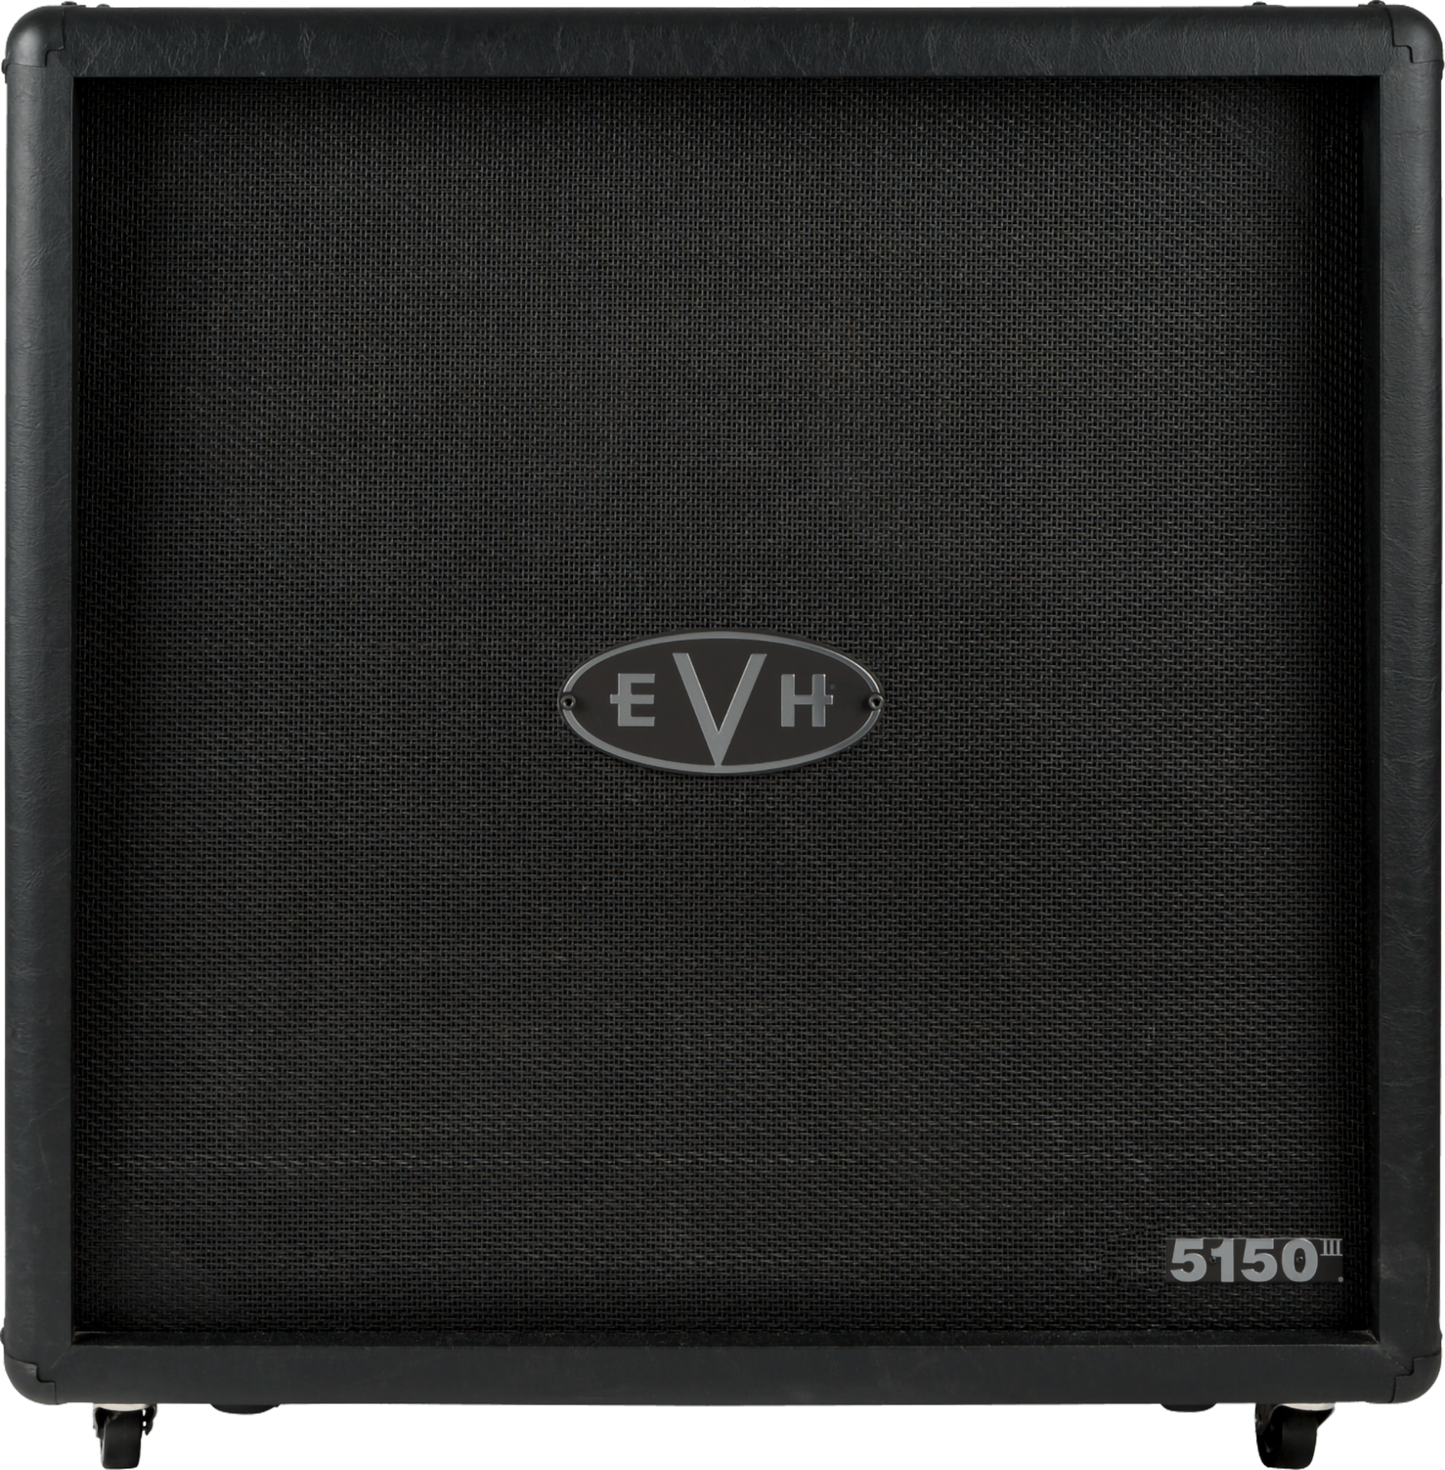 EVH 5150III® Special Run Ltd Ed 4x12” Cabinet